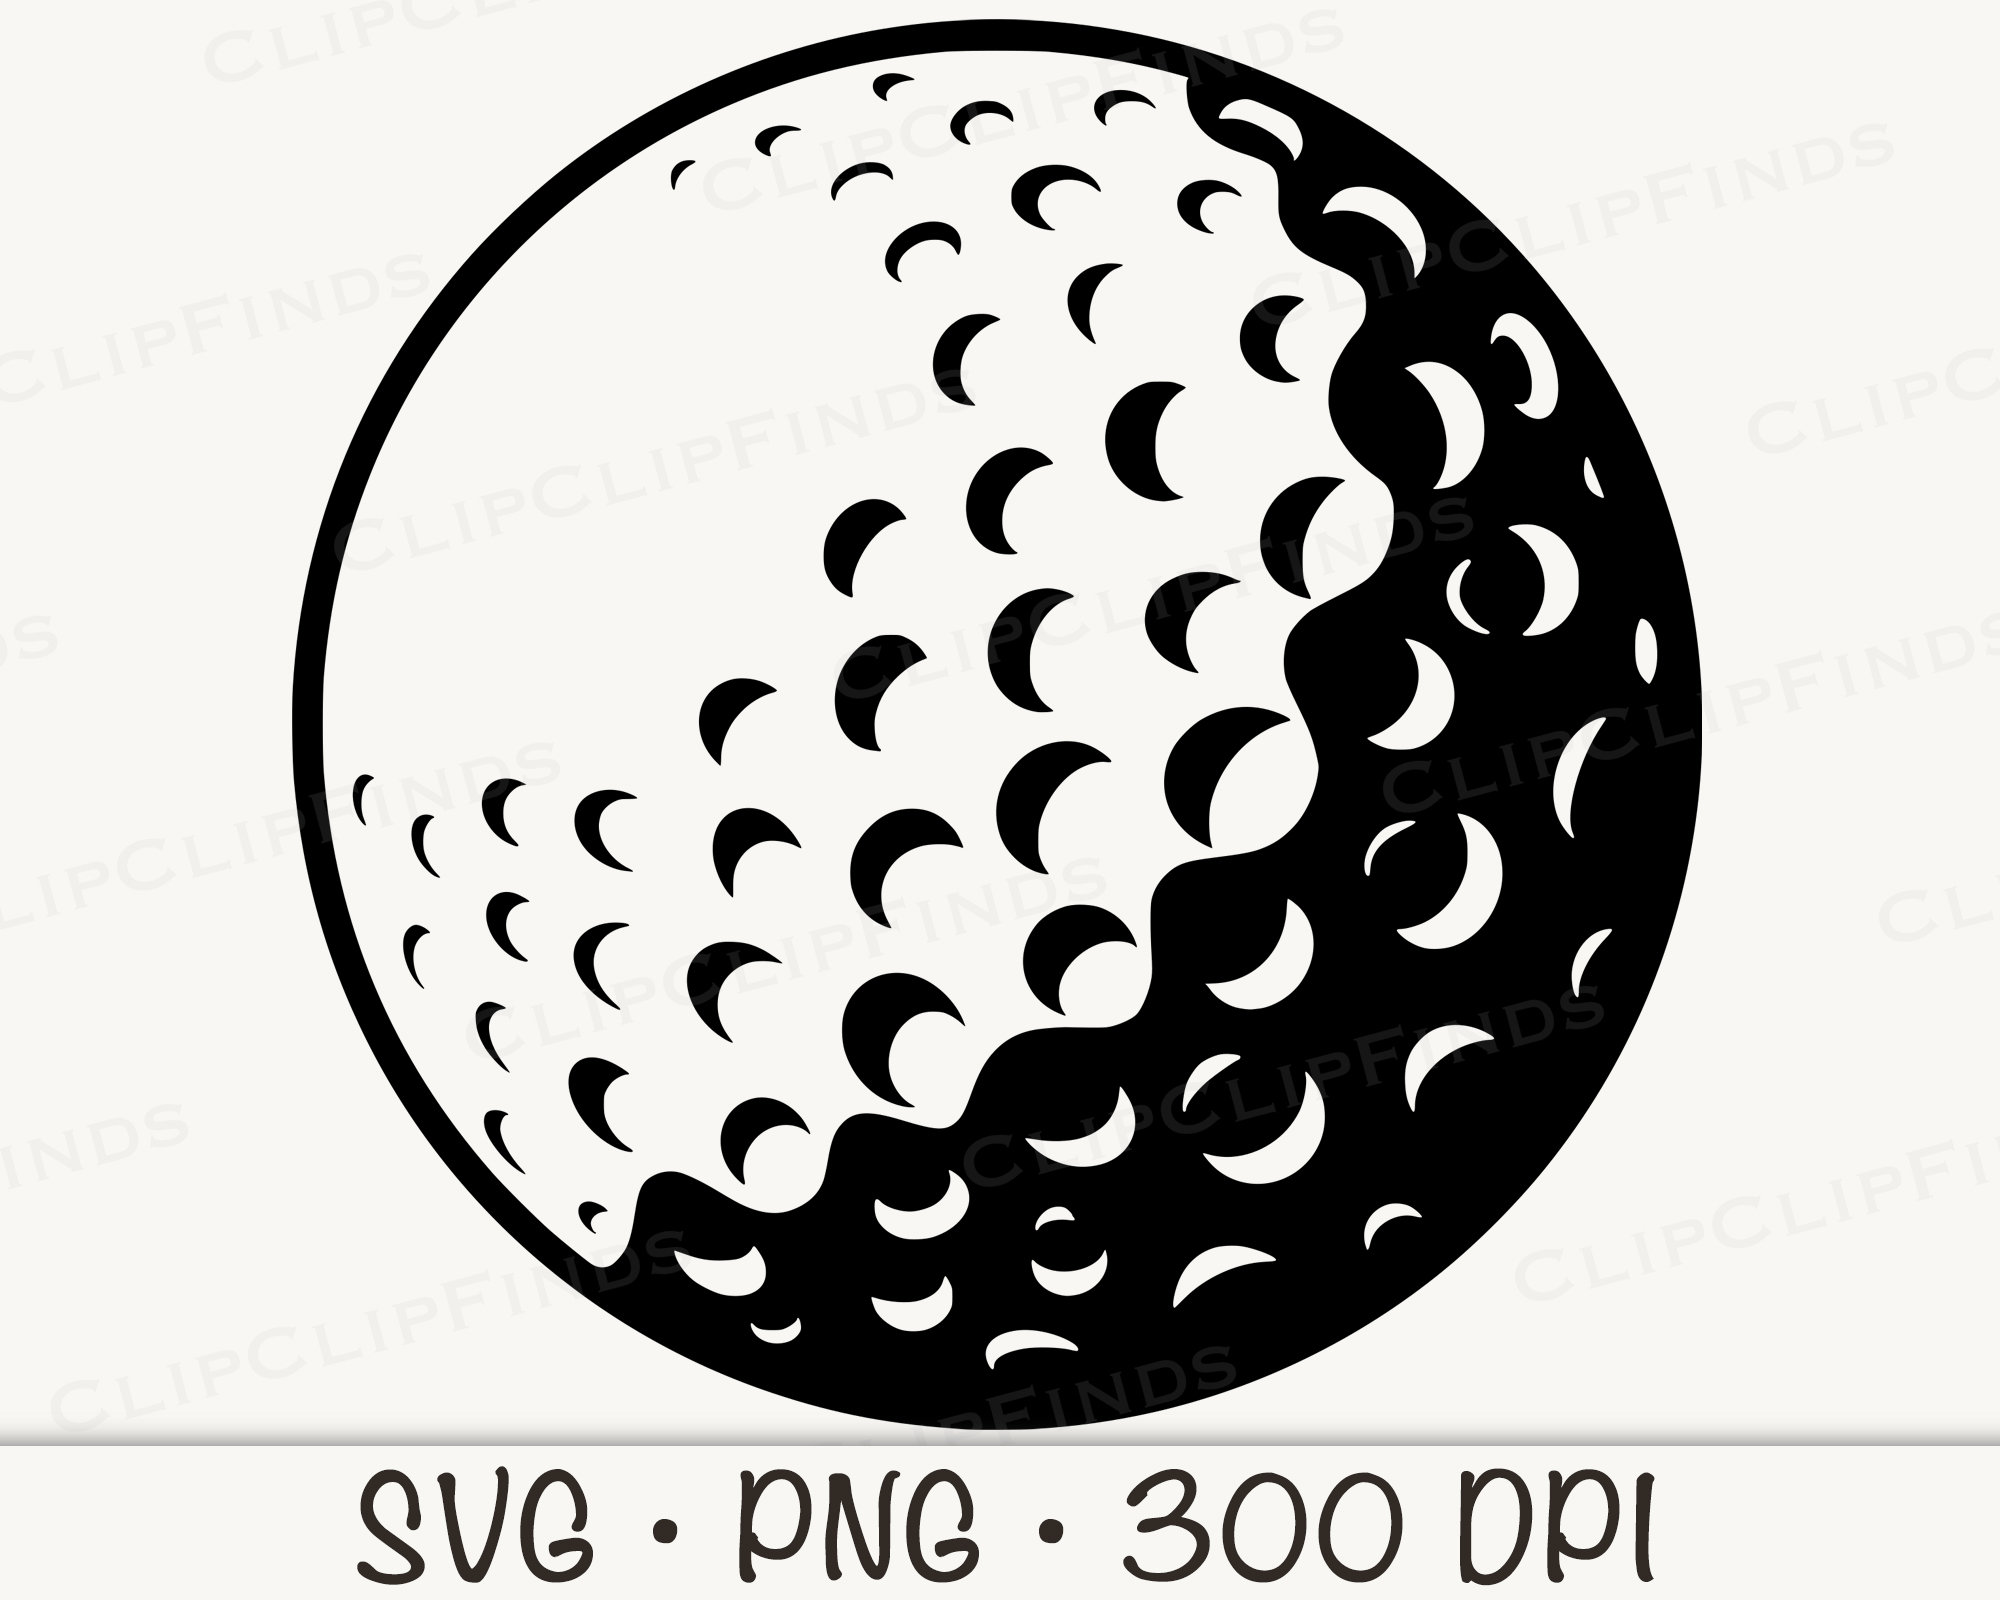 Une Balle De Golf Avec Support Rouge Isolé Sur Fond Blanc Vector  Illustration Clip Art Libres De Droits, Svg, Vecteurs Et Illustration.  Image 29115695